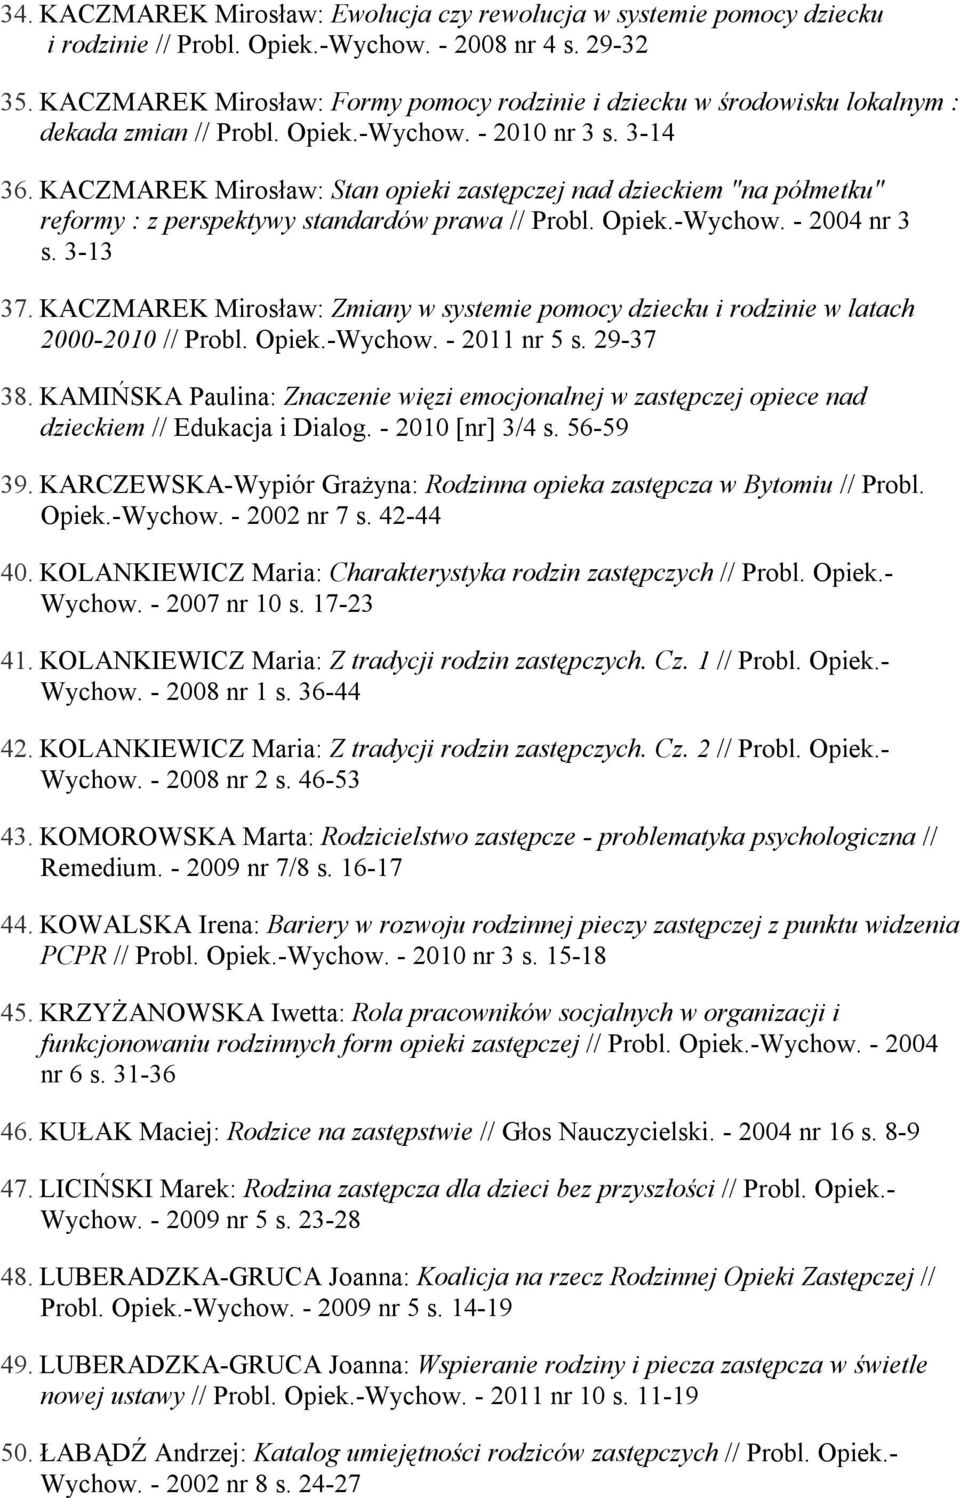 KACZMAREK Mirosław: Stan opieki zastępczej nad dzieckiem "na półmetku" reformy : z perspektywy standardów prawa // Probl. Opiek.-Wychow. - 2004 nr 3 s. 3-13 37.